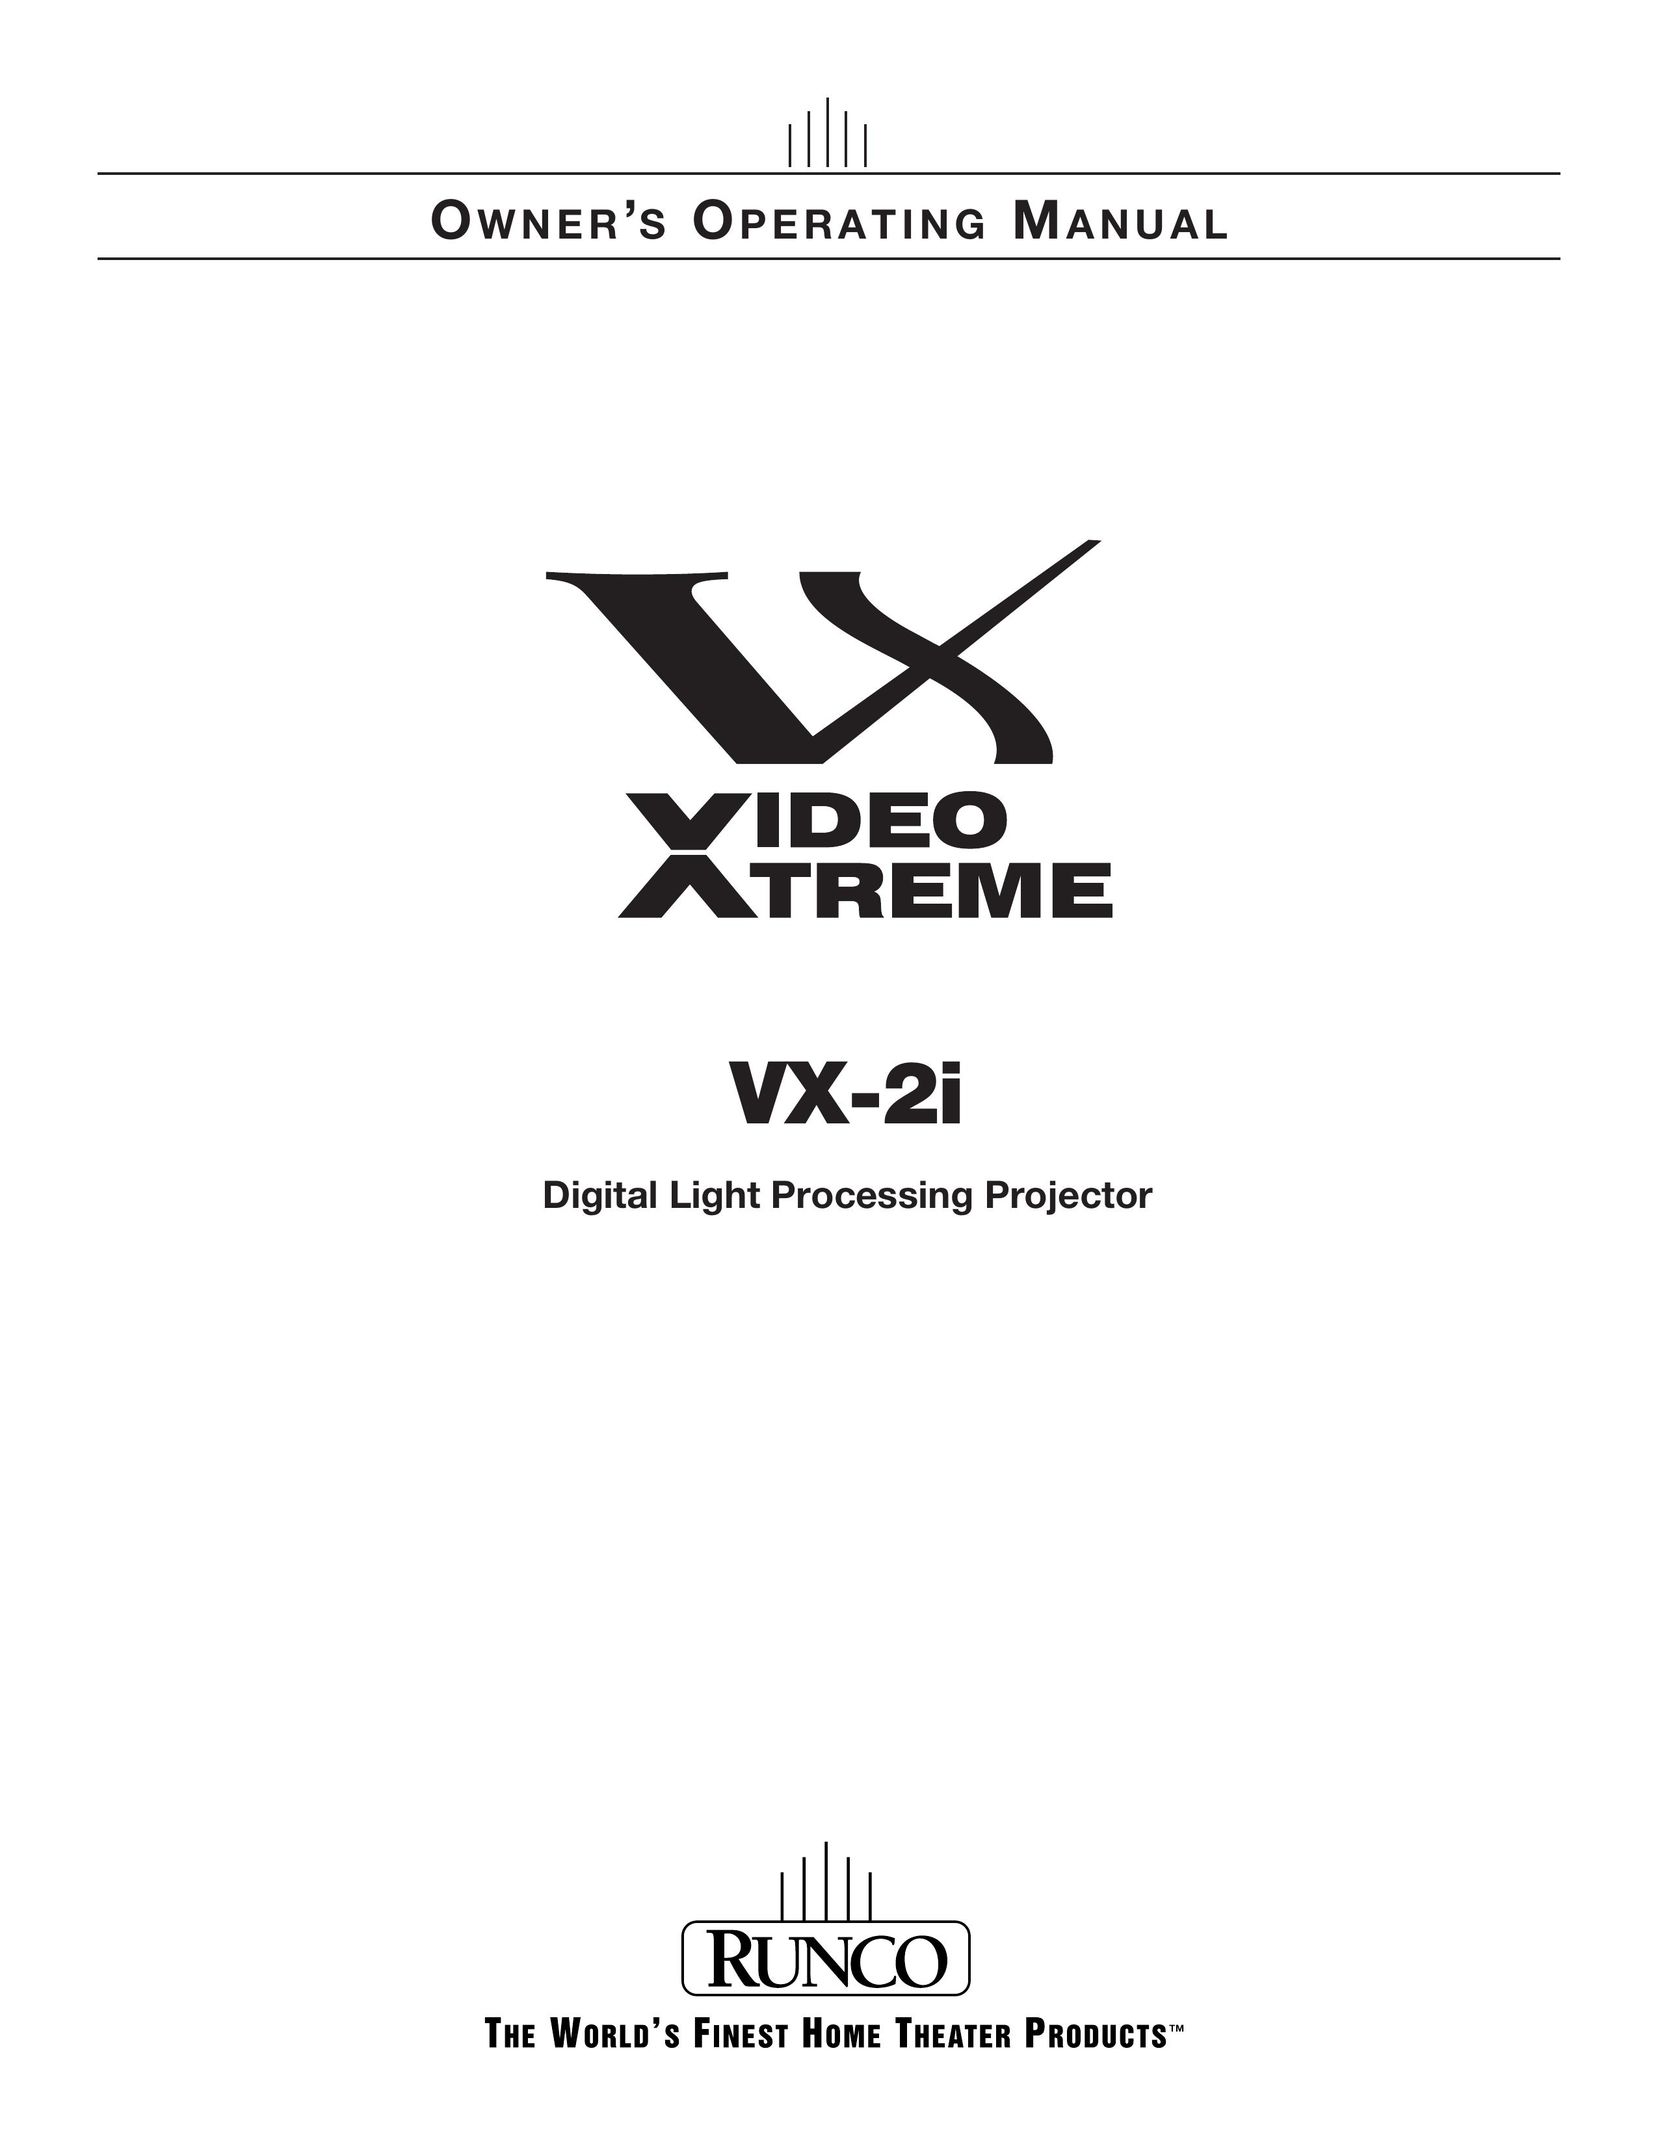 Runco VX-2i Projector User Manual